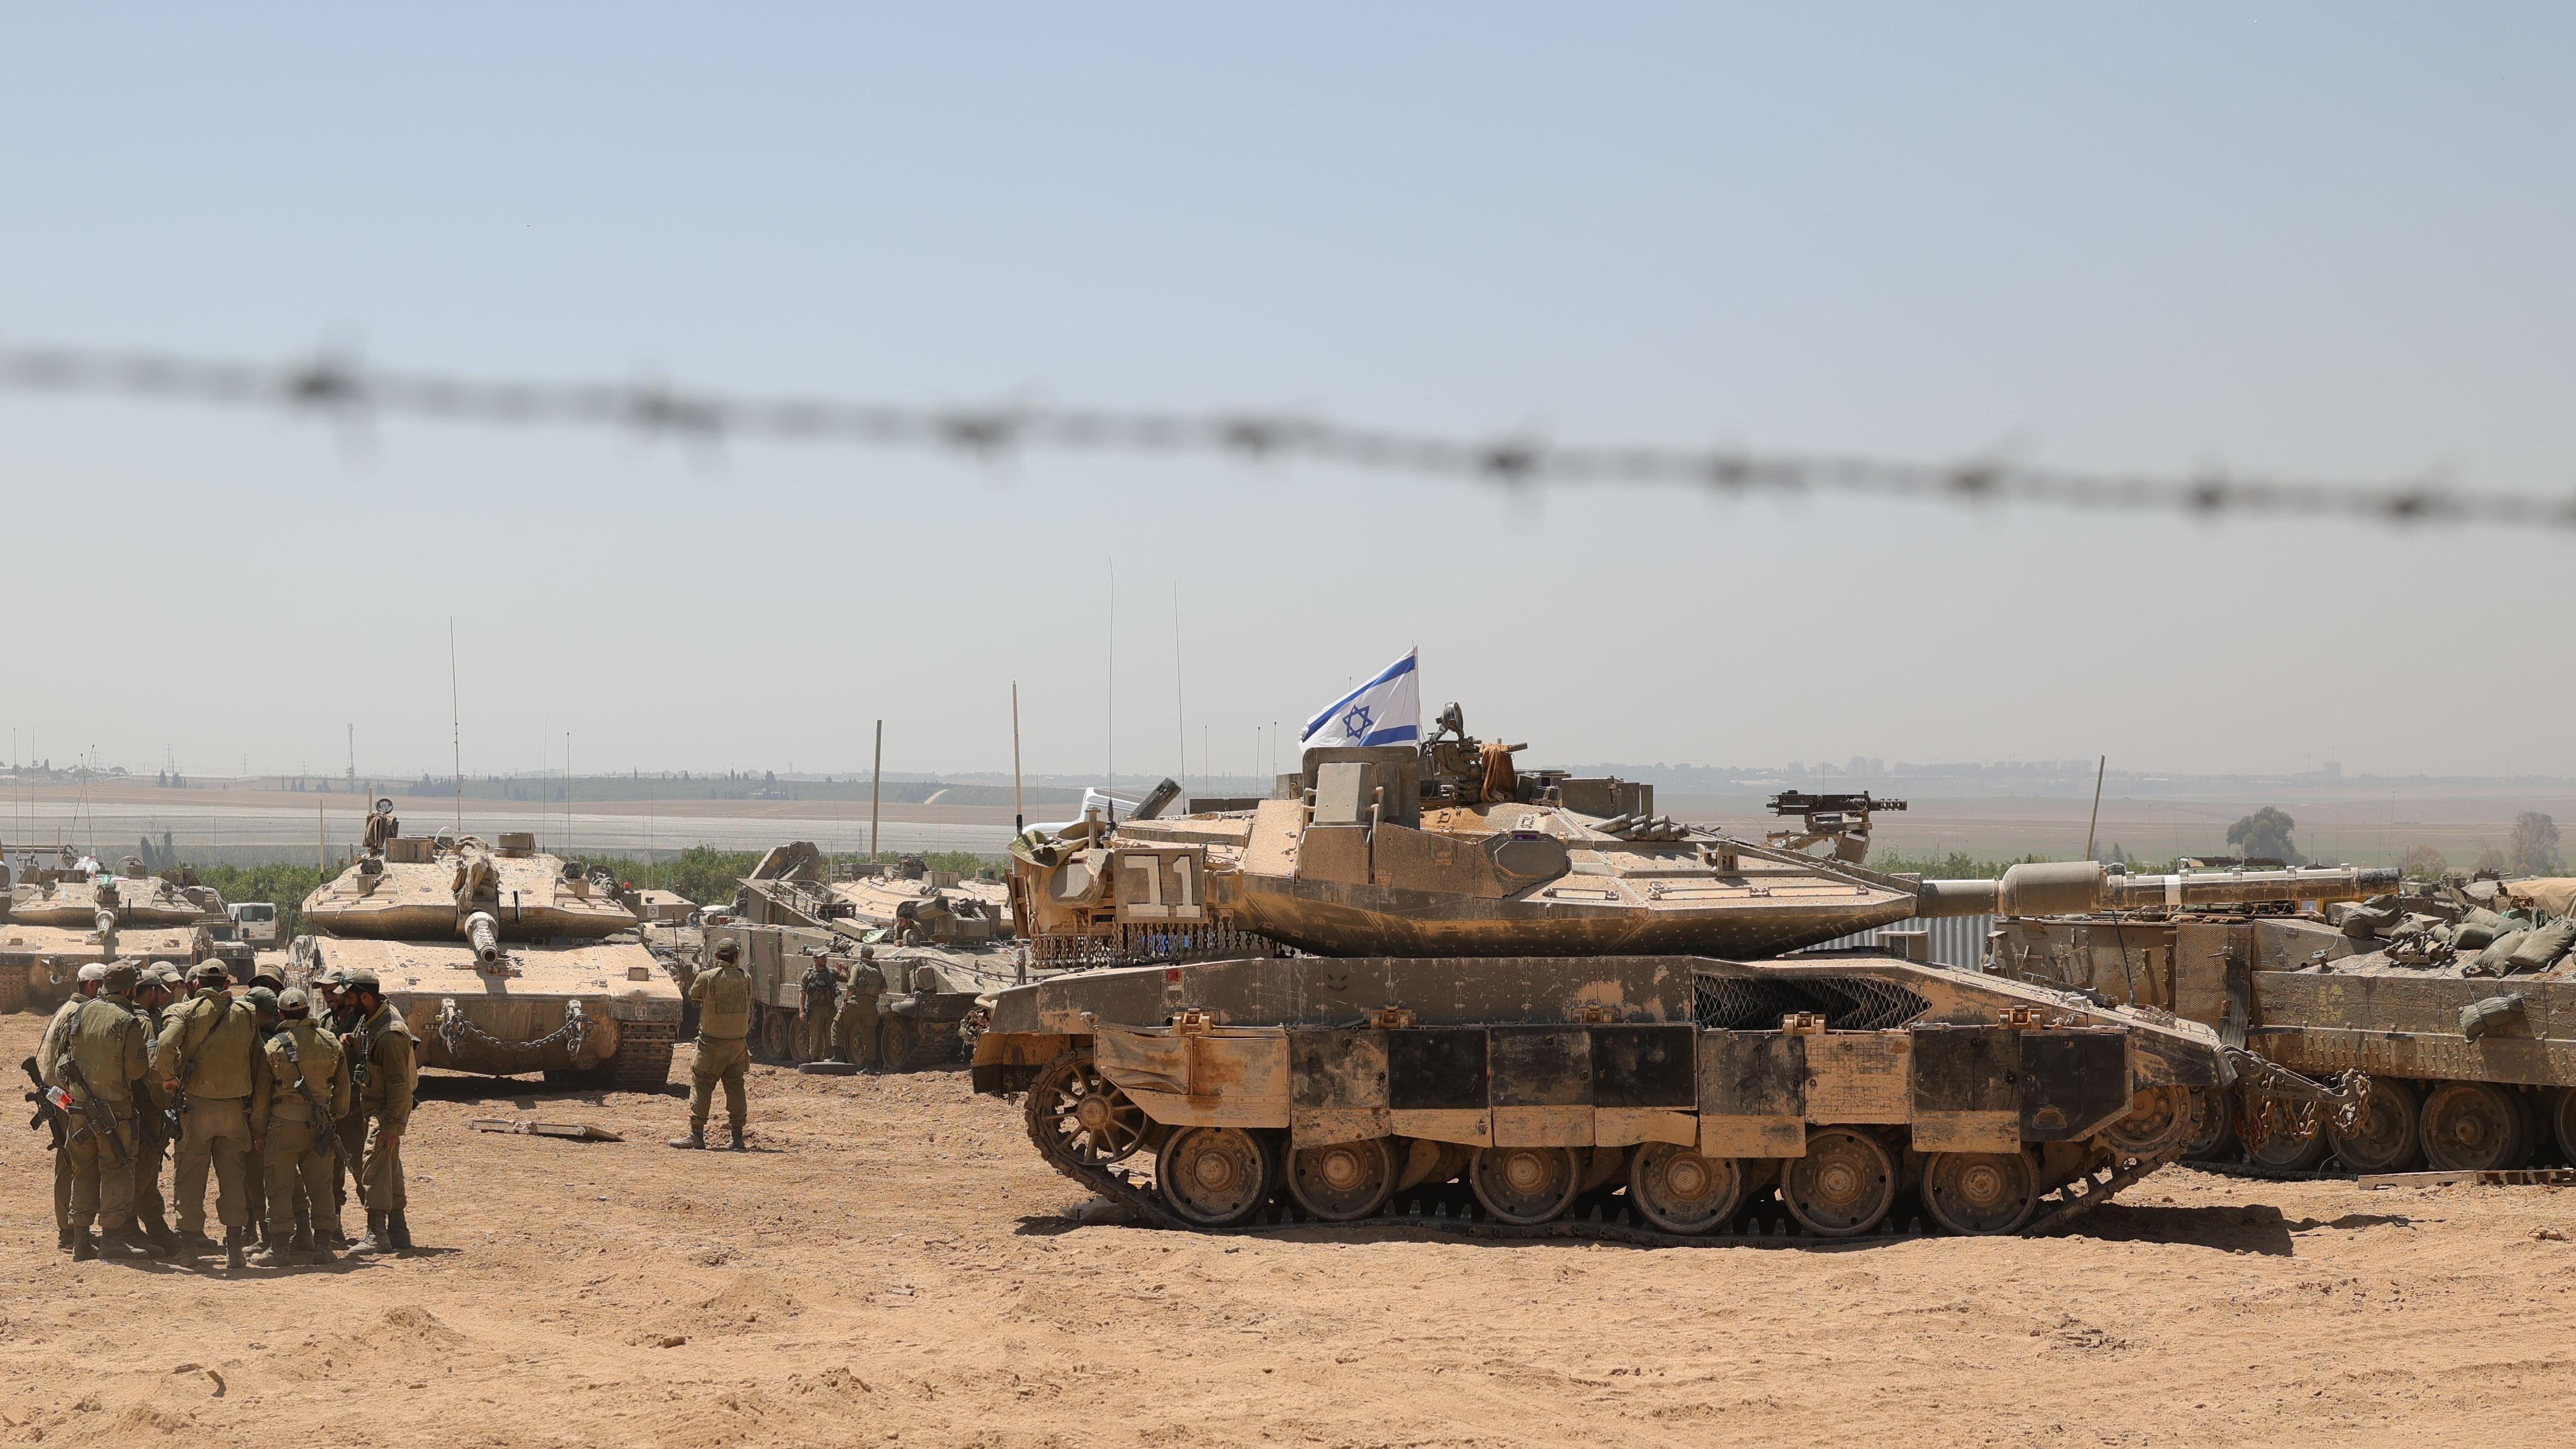 بعد انتهاء جولة المفاوضات دون نتائج، إسرائيل تؤكد استمرار عملية رفح، وواشنطن تقول إن هناك "طرقاً أفضل"